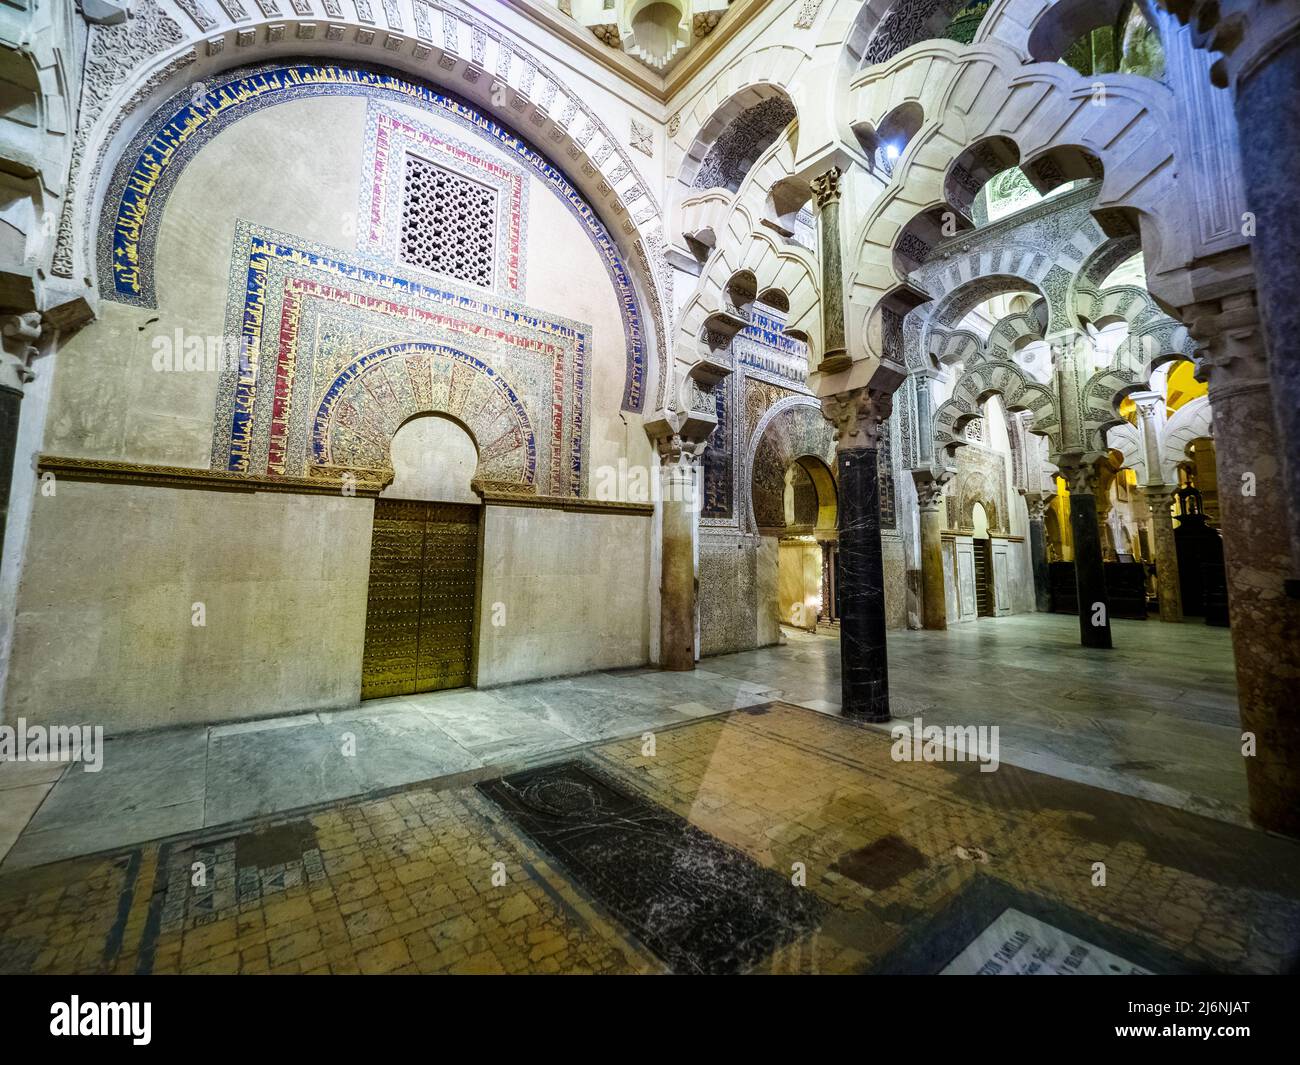 Östliche Tür im Maqsura-Bereich (links vom Mihrab), die zur Schatzkammer der Moschee führte - Mezquita-Catedral (große Moschee von Cordoba) - Cordoba, Spanien Stockfoto